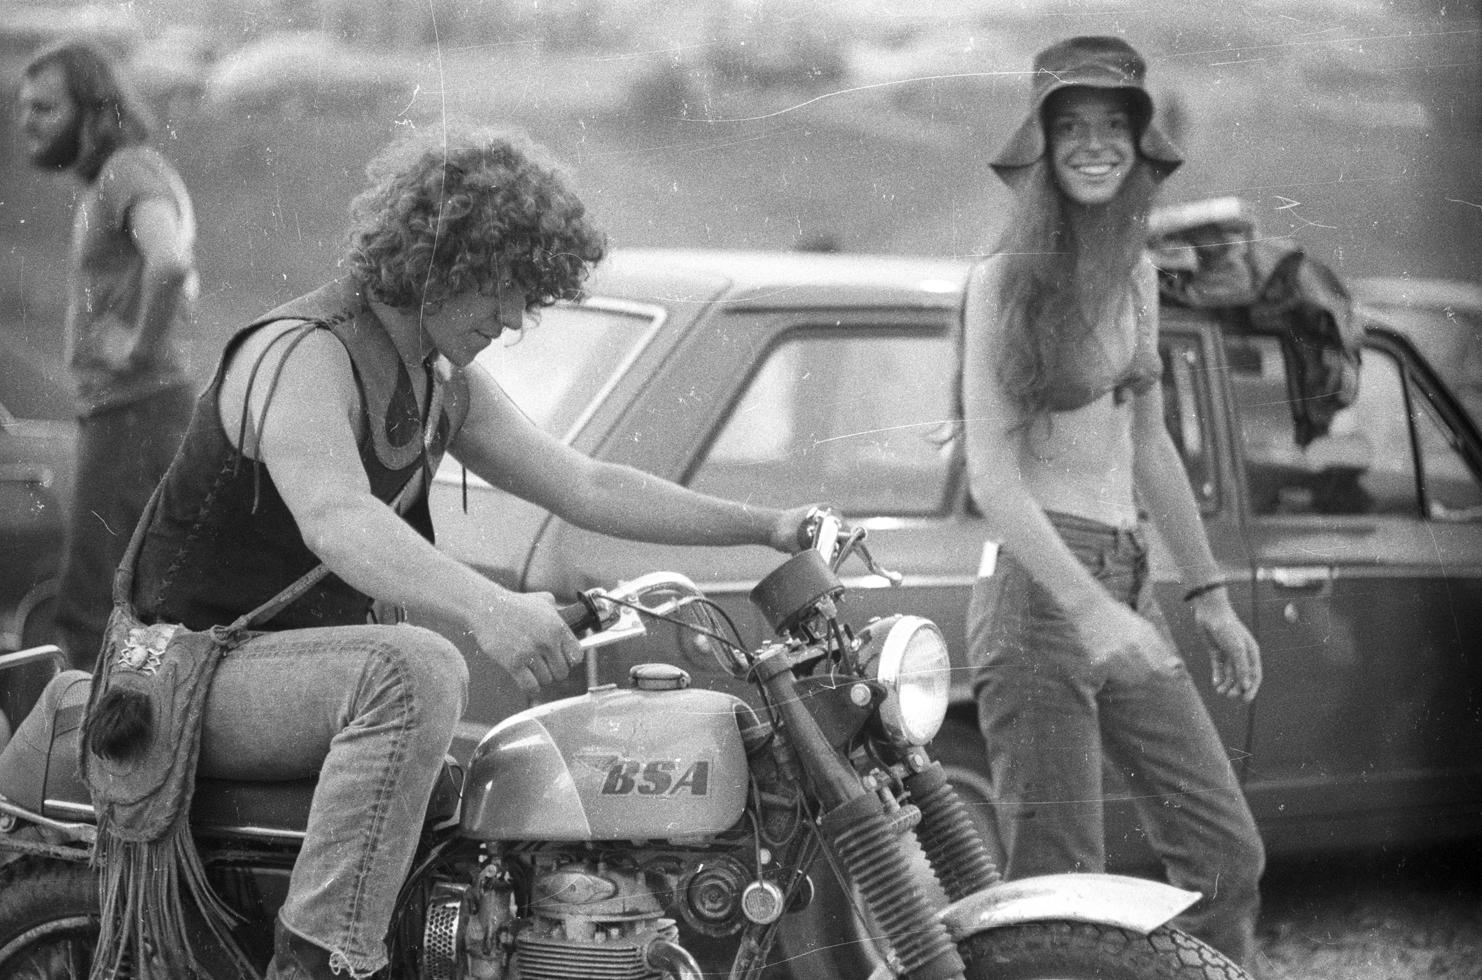 Michael Lang - Woodstock